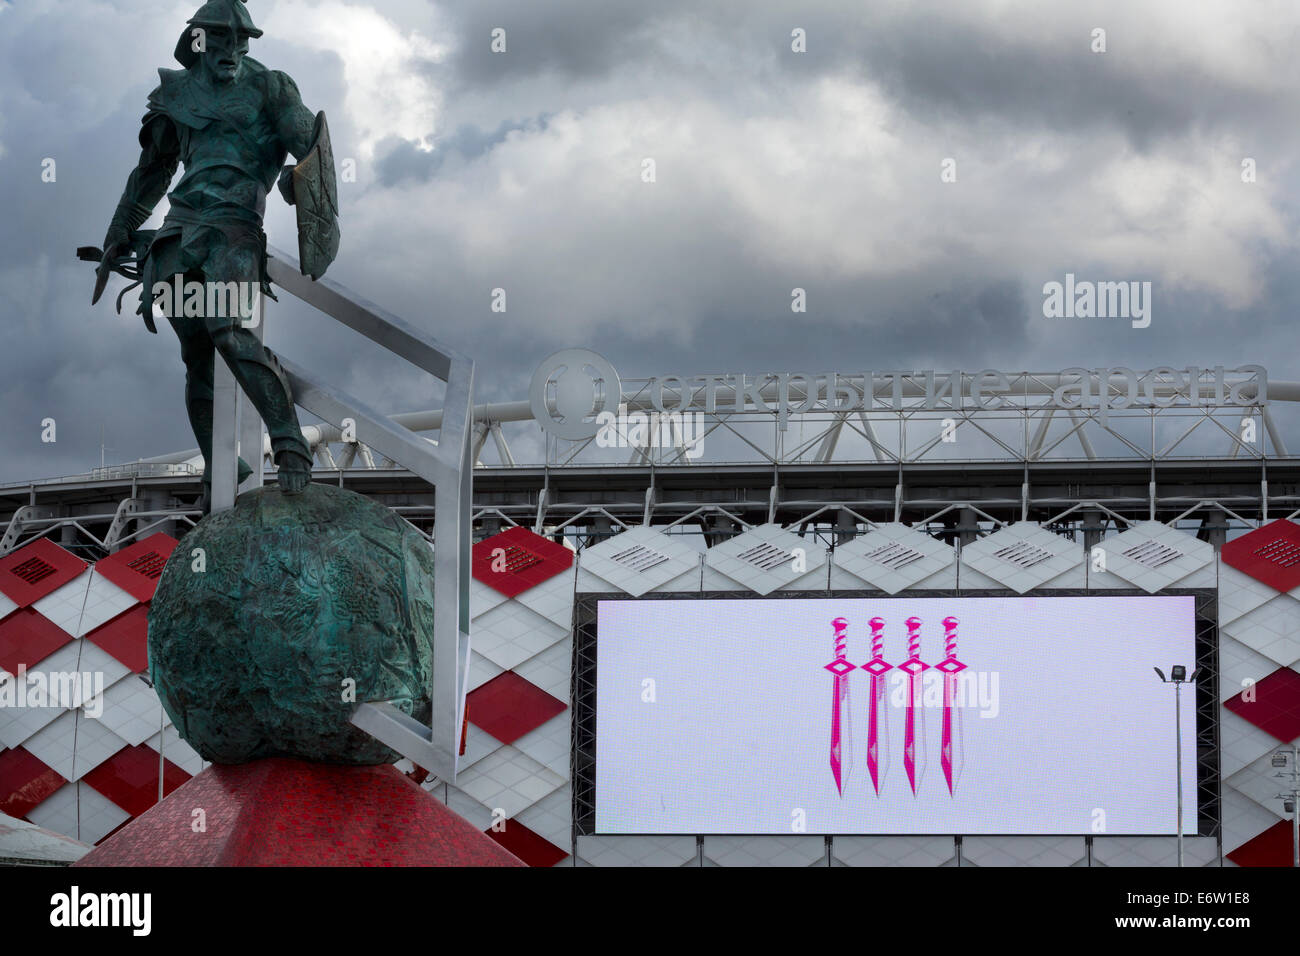 Moskau, Russland. 30. August 2014. Moskau öffnet WM 2018-Stadion - Otkrytie Arena Credit: Nikolay Vinokurov/Alamy Live-Nachrichten Stockfoto